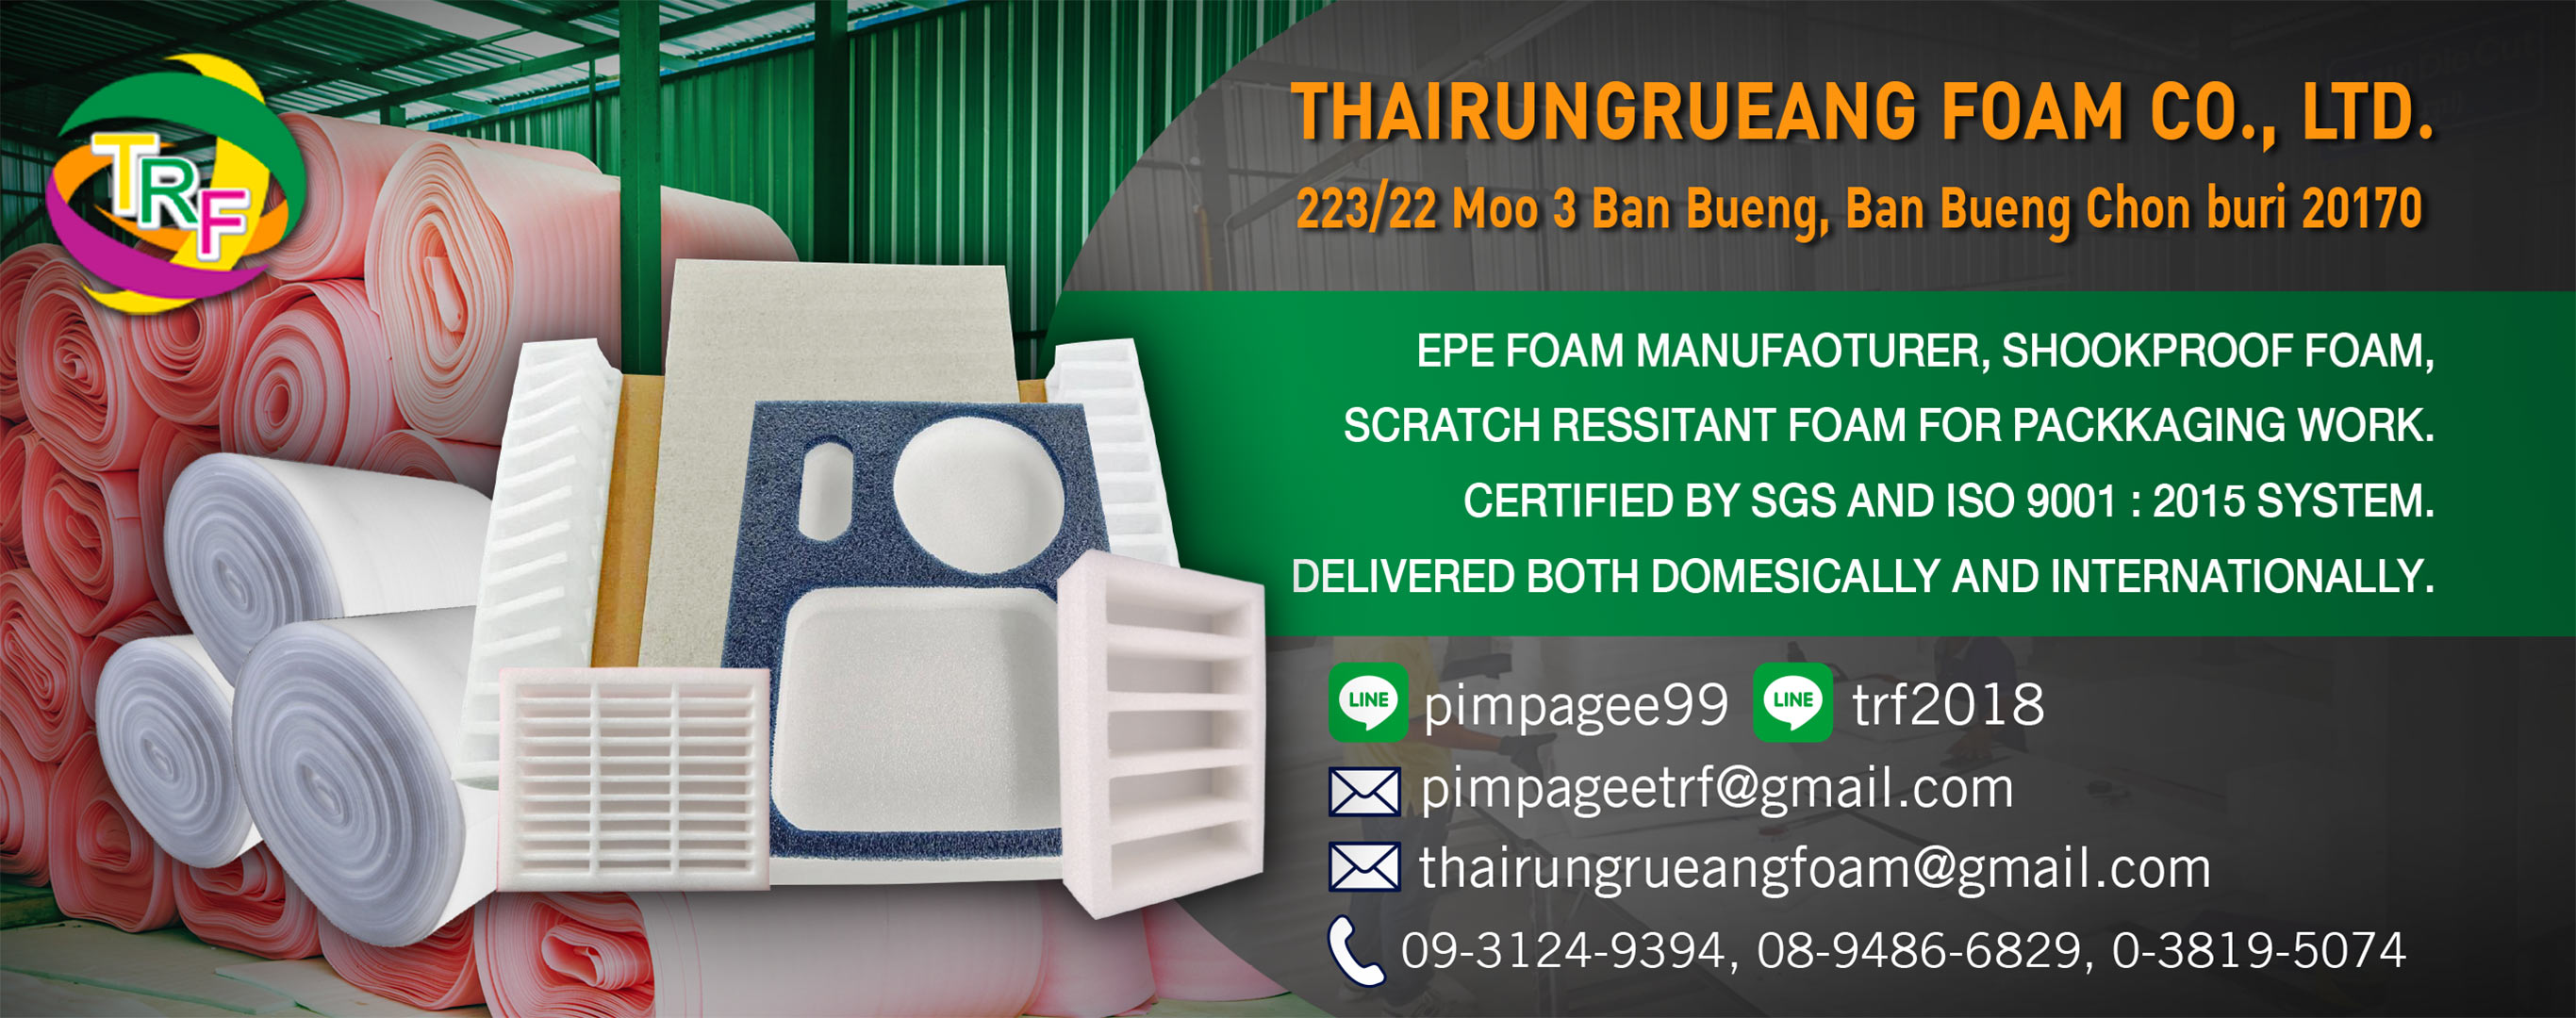  Get a die-cut foam - Thai Rungrueng Foam